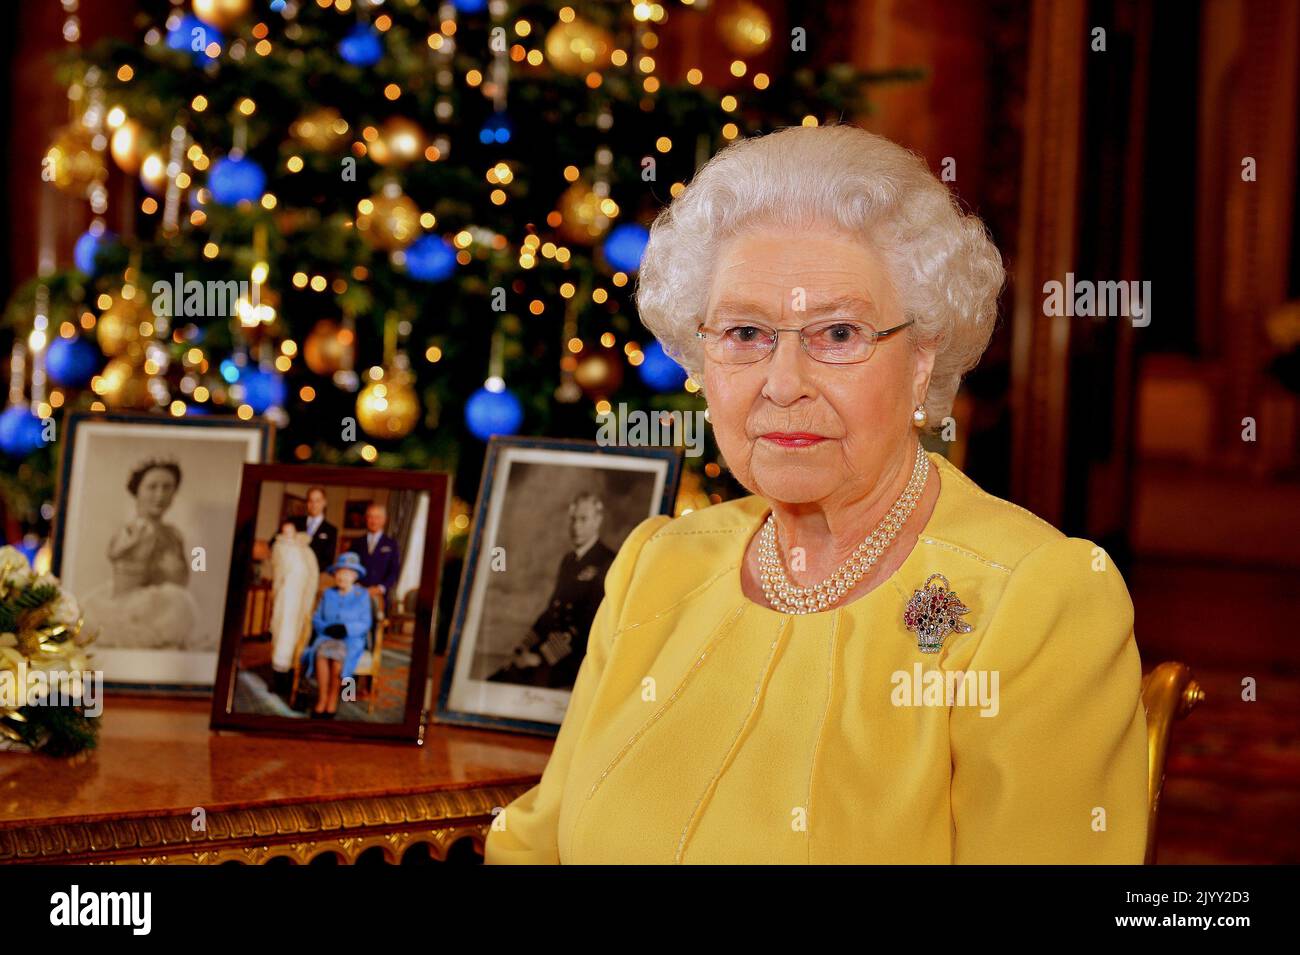 Foto de archivo de fecha 24/12/2013 de la Reina Isabel II después de grabar su transmisión del día de Navidad a la Commonwealth, en la Sala de Dibujo Azul del Palacio de Buckingham en el centro de Londres. Fecha de emisión: Jueves 8 de septiembre de 2022. Foto de stock